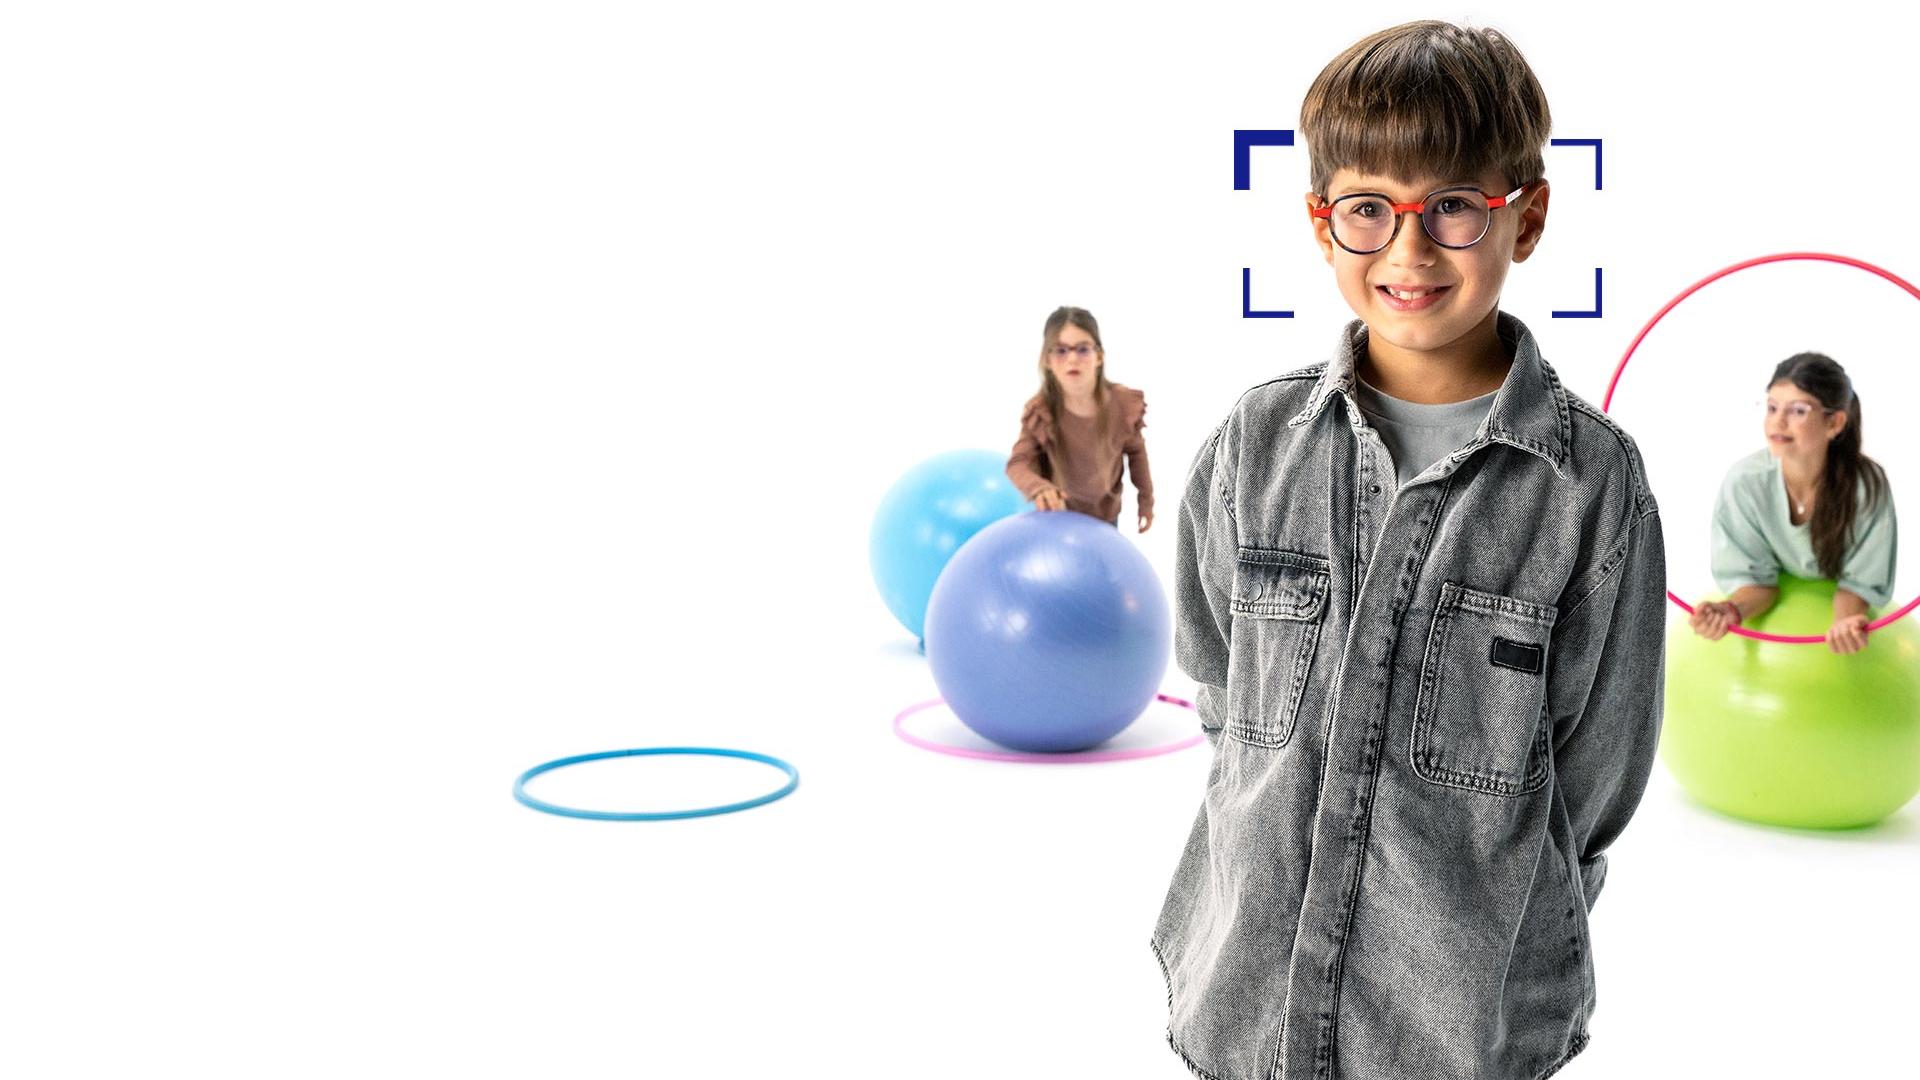 Un niño con gafas redondas de lentes ZEISS MyoCare se encuentra en primer plano y sonríe a la cámara. Al fondo, dos niñas con lentes ZEISS MyoCare jugando con aros y pelotas de gimnasia.